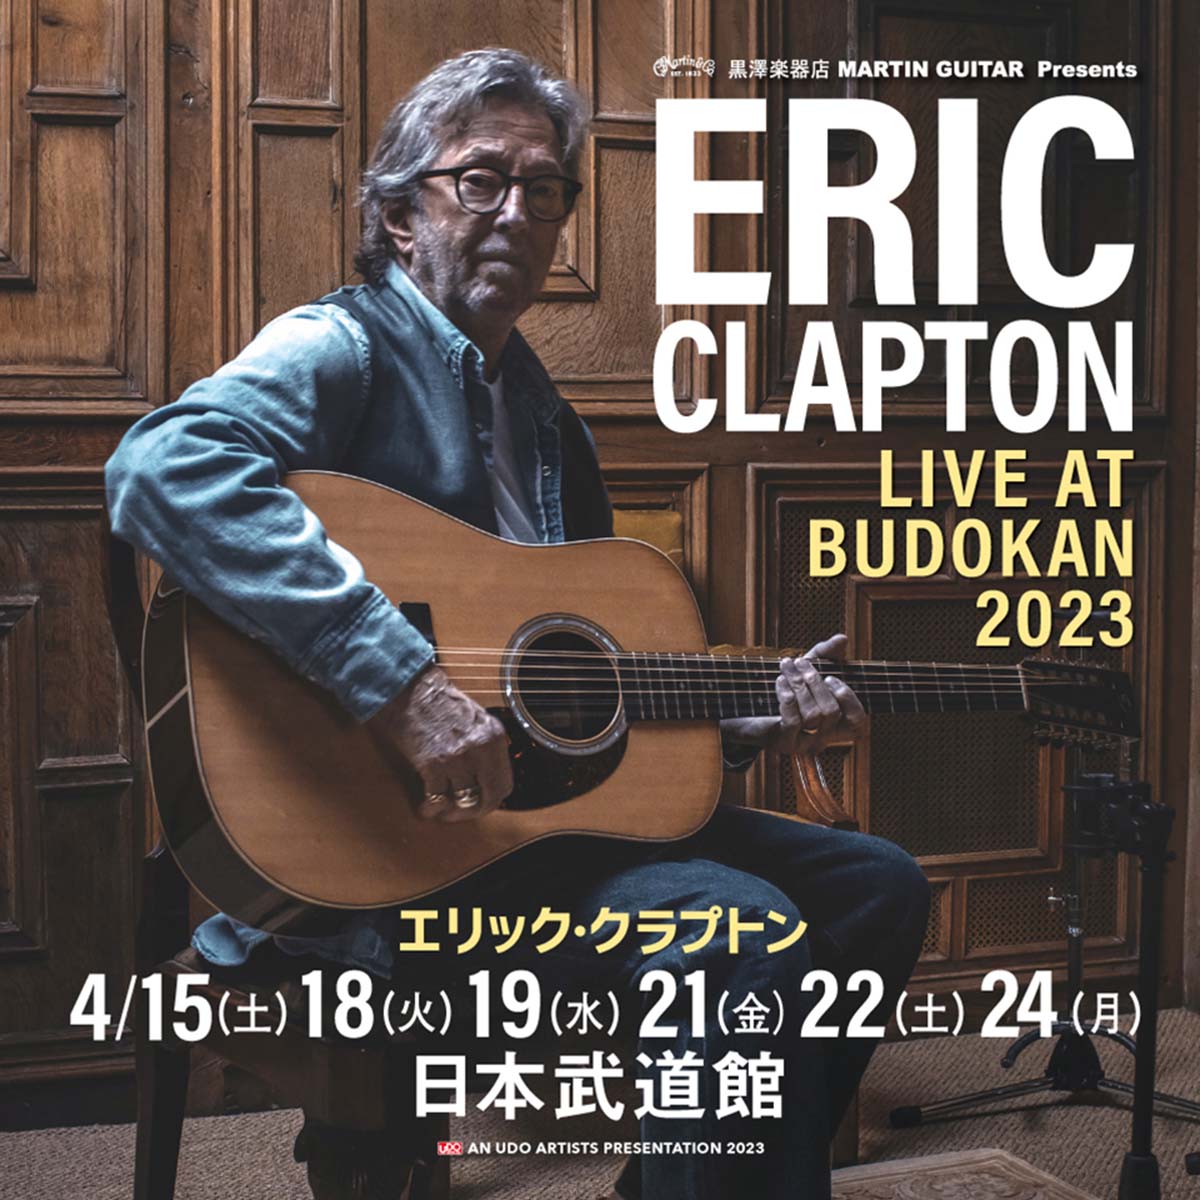 エリック・クラプトンの来日公演が2023年4月に開催決定！日本武道館